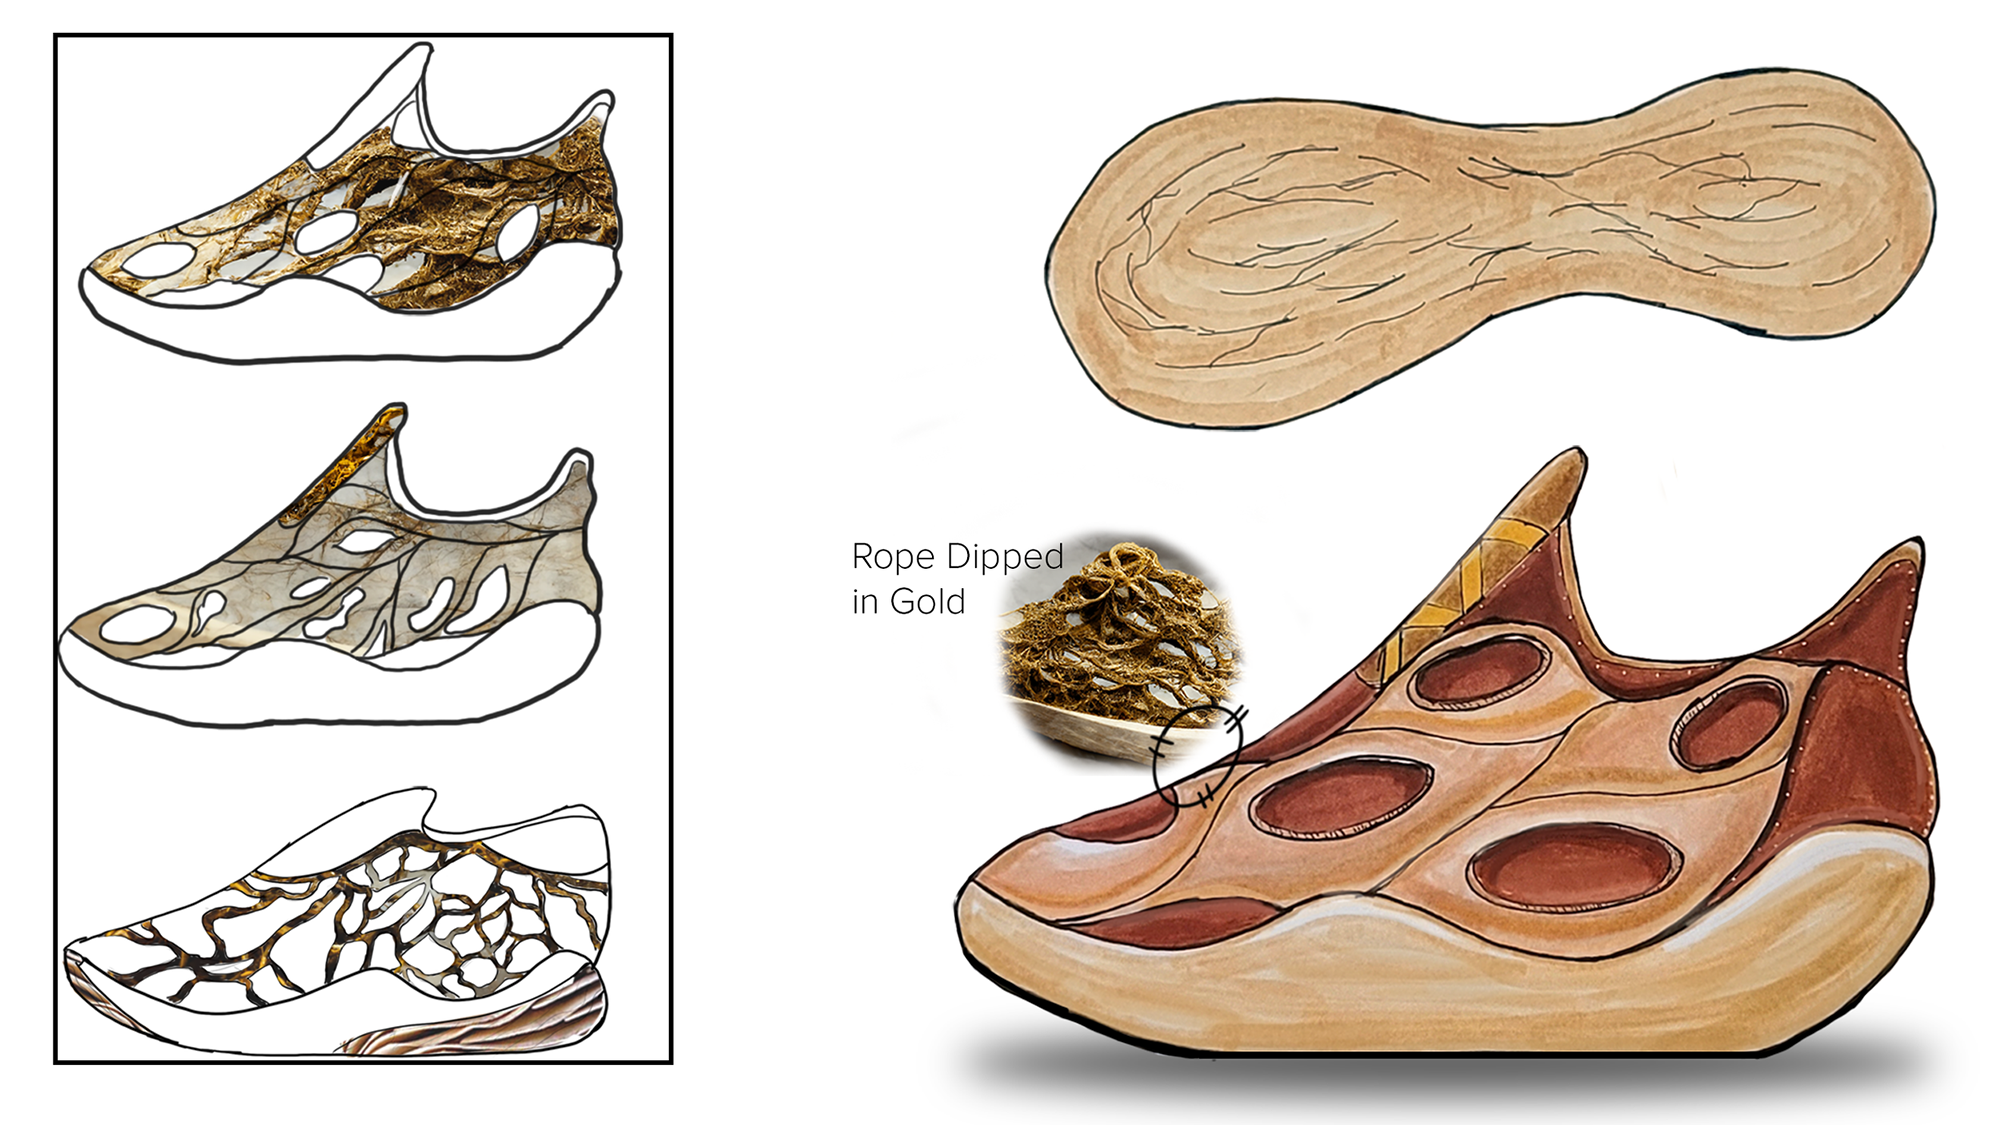 3D models of a shoe design.